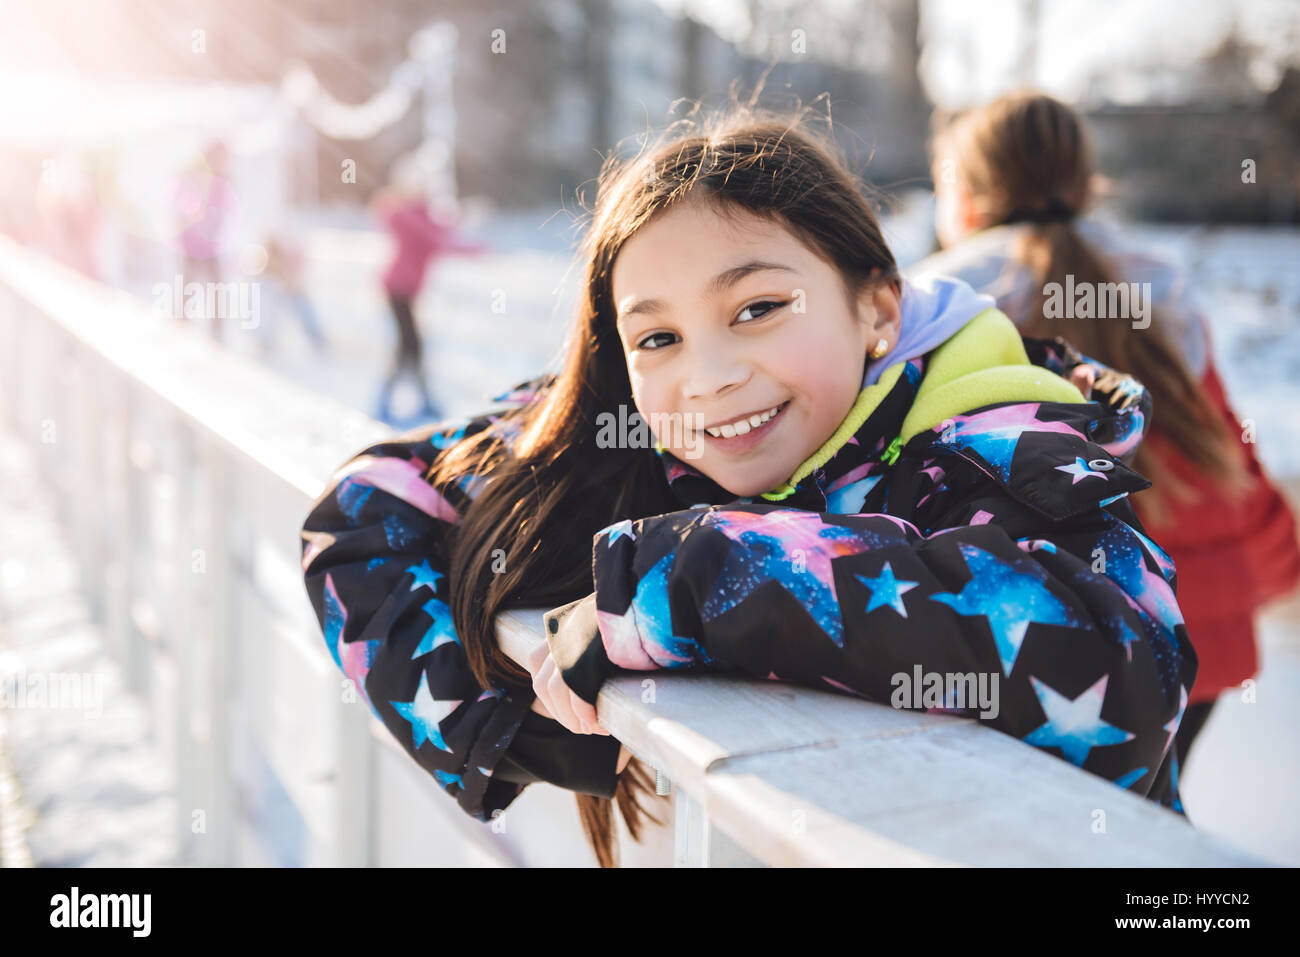 Skating girl divertirse en la pista de patinaje sobre hielo Foto de stock